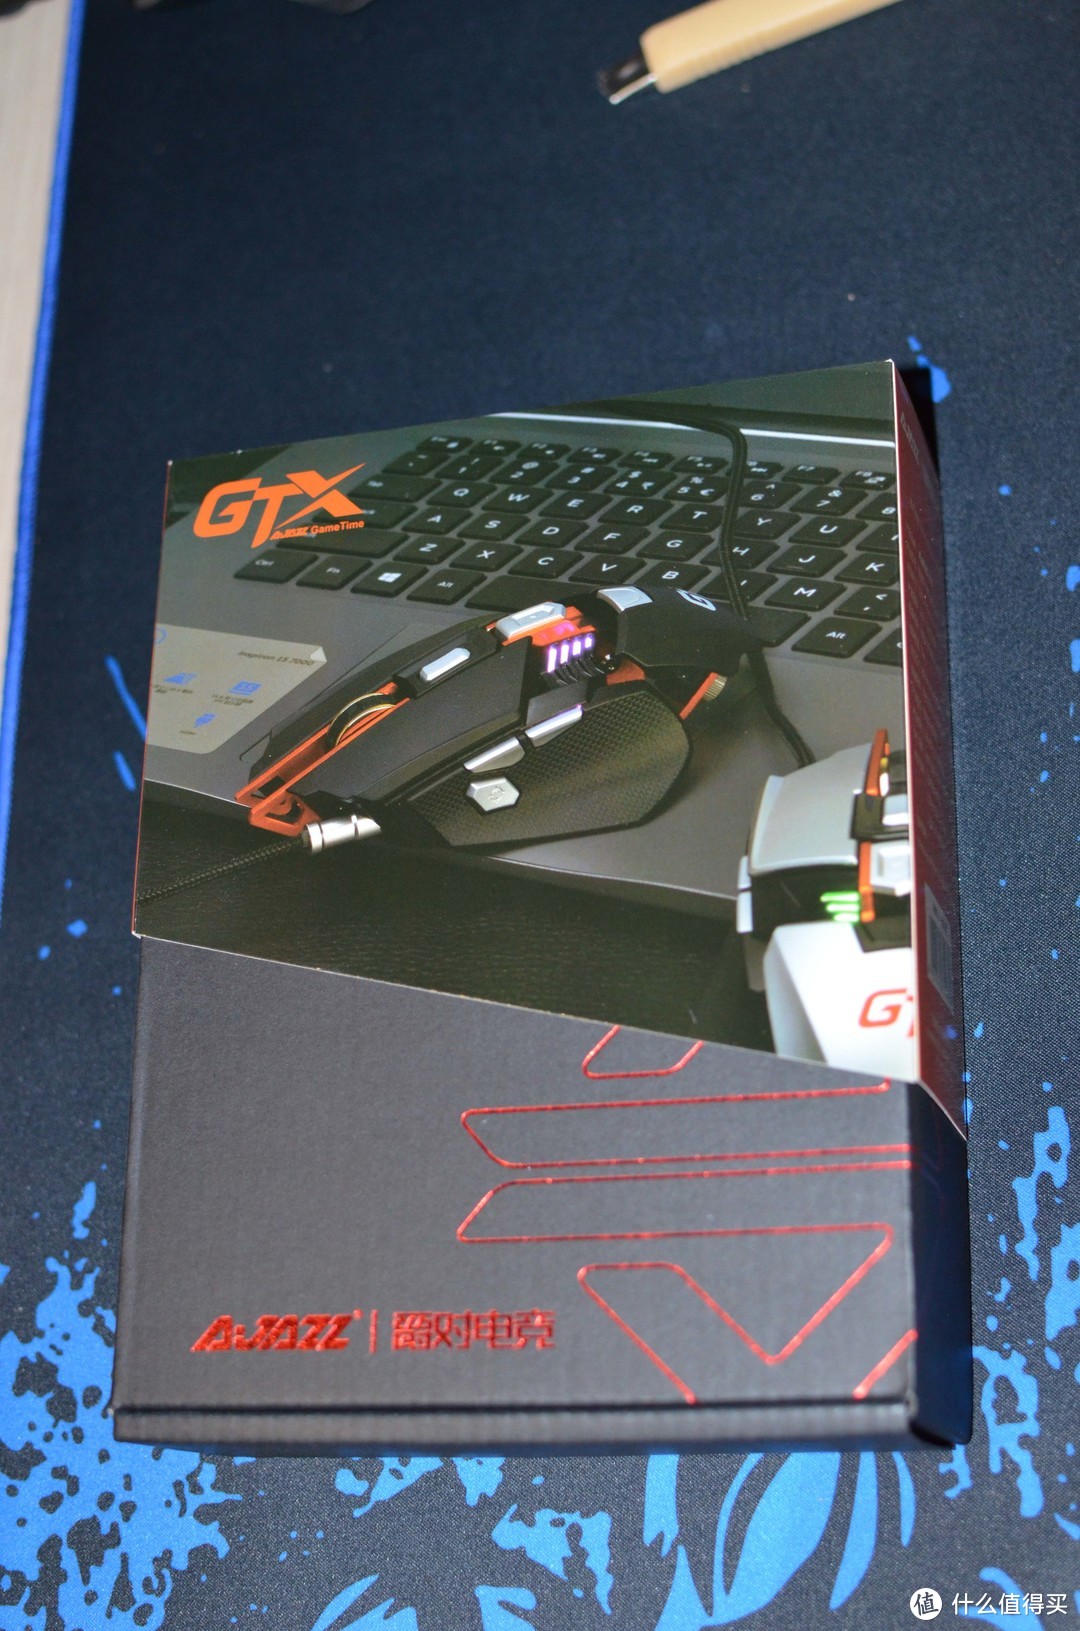 鼠标中的钢铁侠——黑爵GTX游戏鼠标众测报告